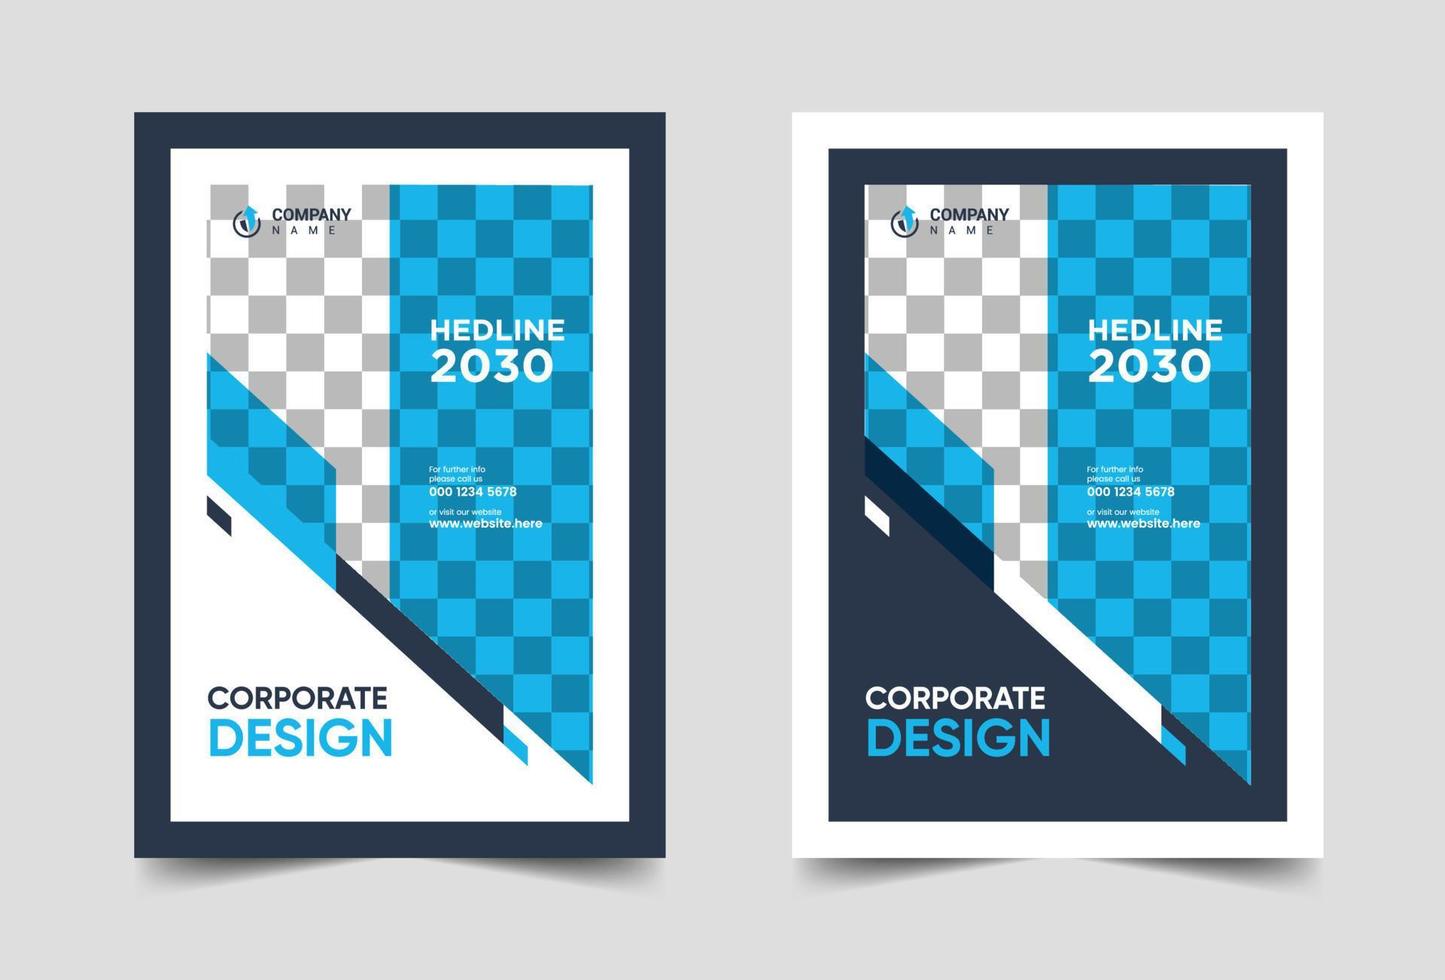 rapport annuel brochure flyer design vecteur dépliant présentation couverture business magazine templates